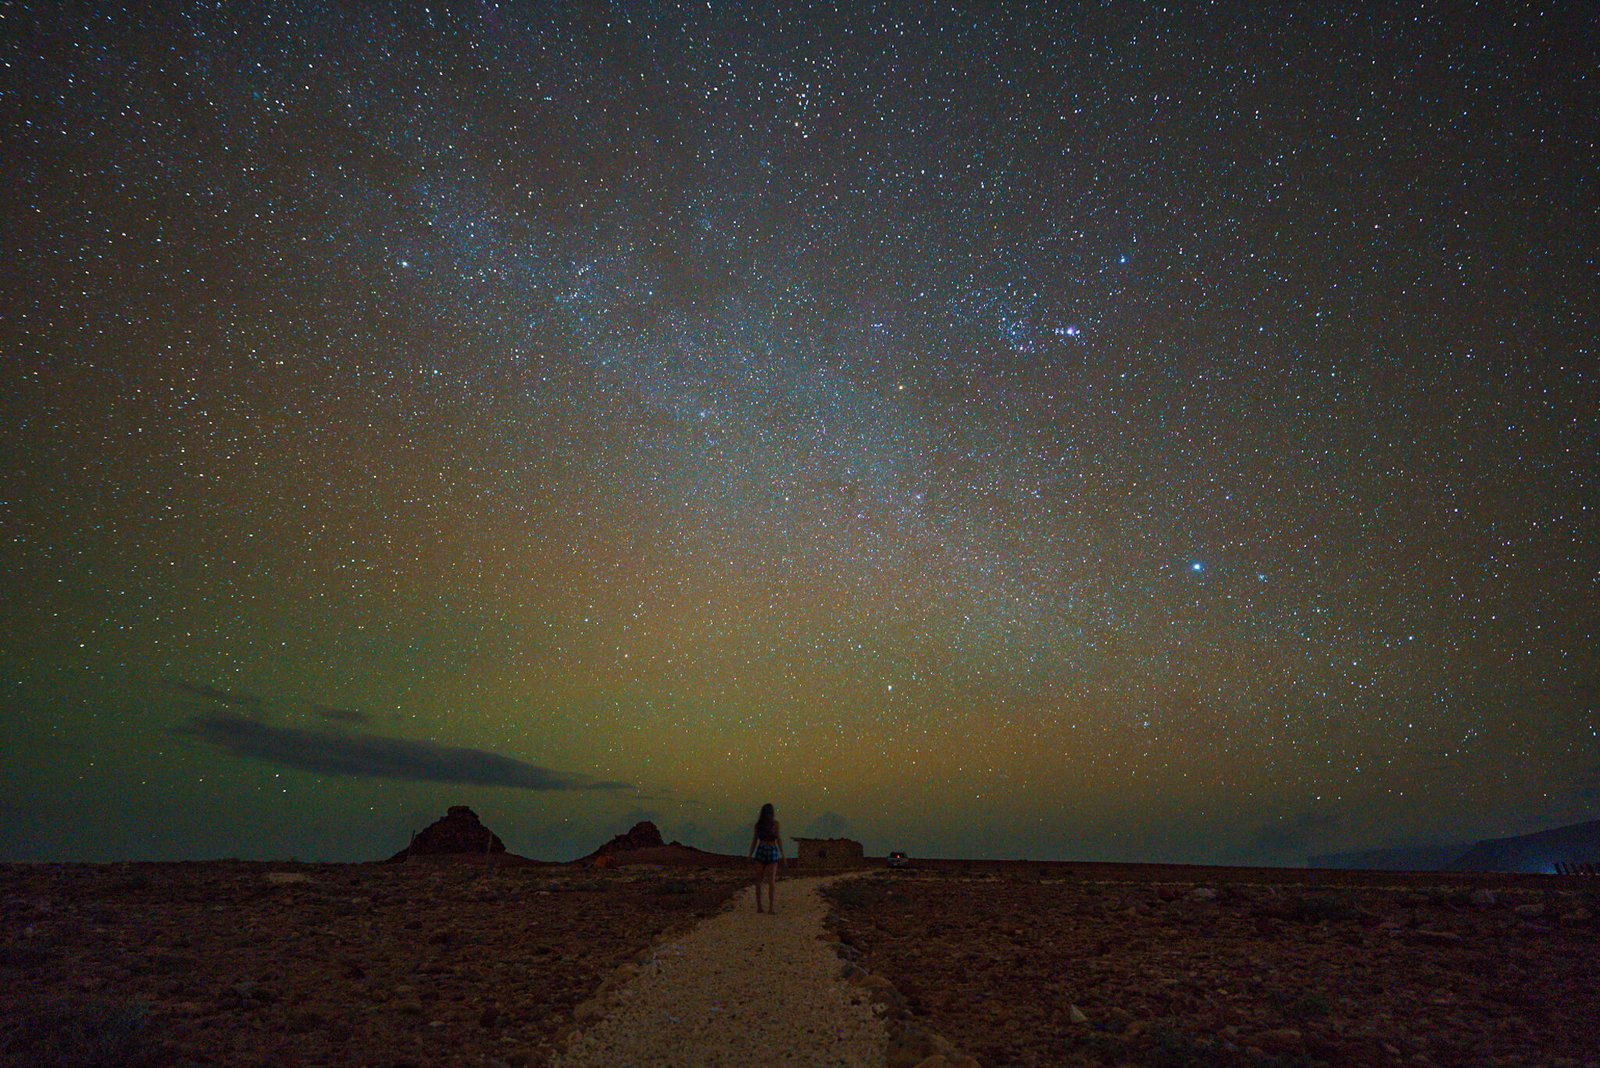 astrophotography on the island of Socotra, Yemen